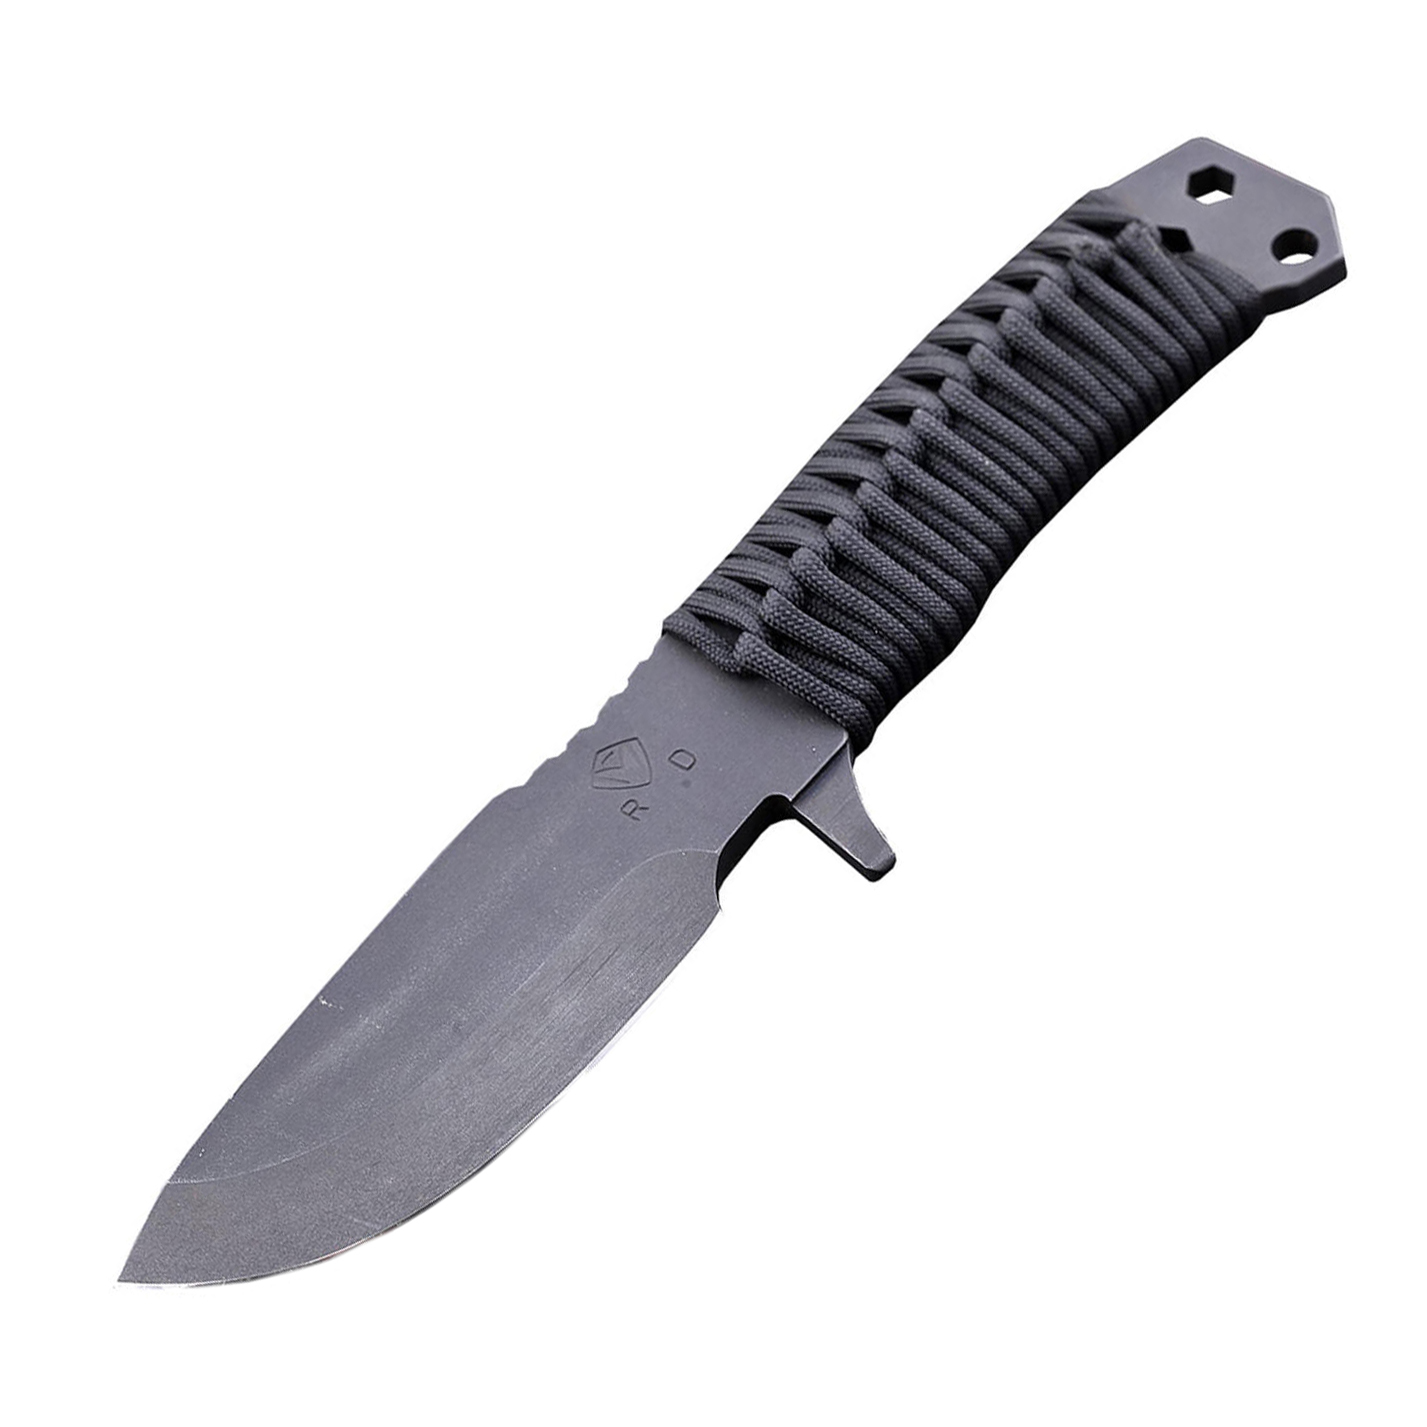 Нож с фиксированным клинком Medford D-FM-2, сталь D2 Tool Steel, рукоять паракорд нож с фиксированным клинком gerber river shorty